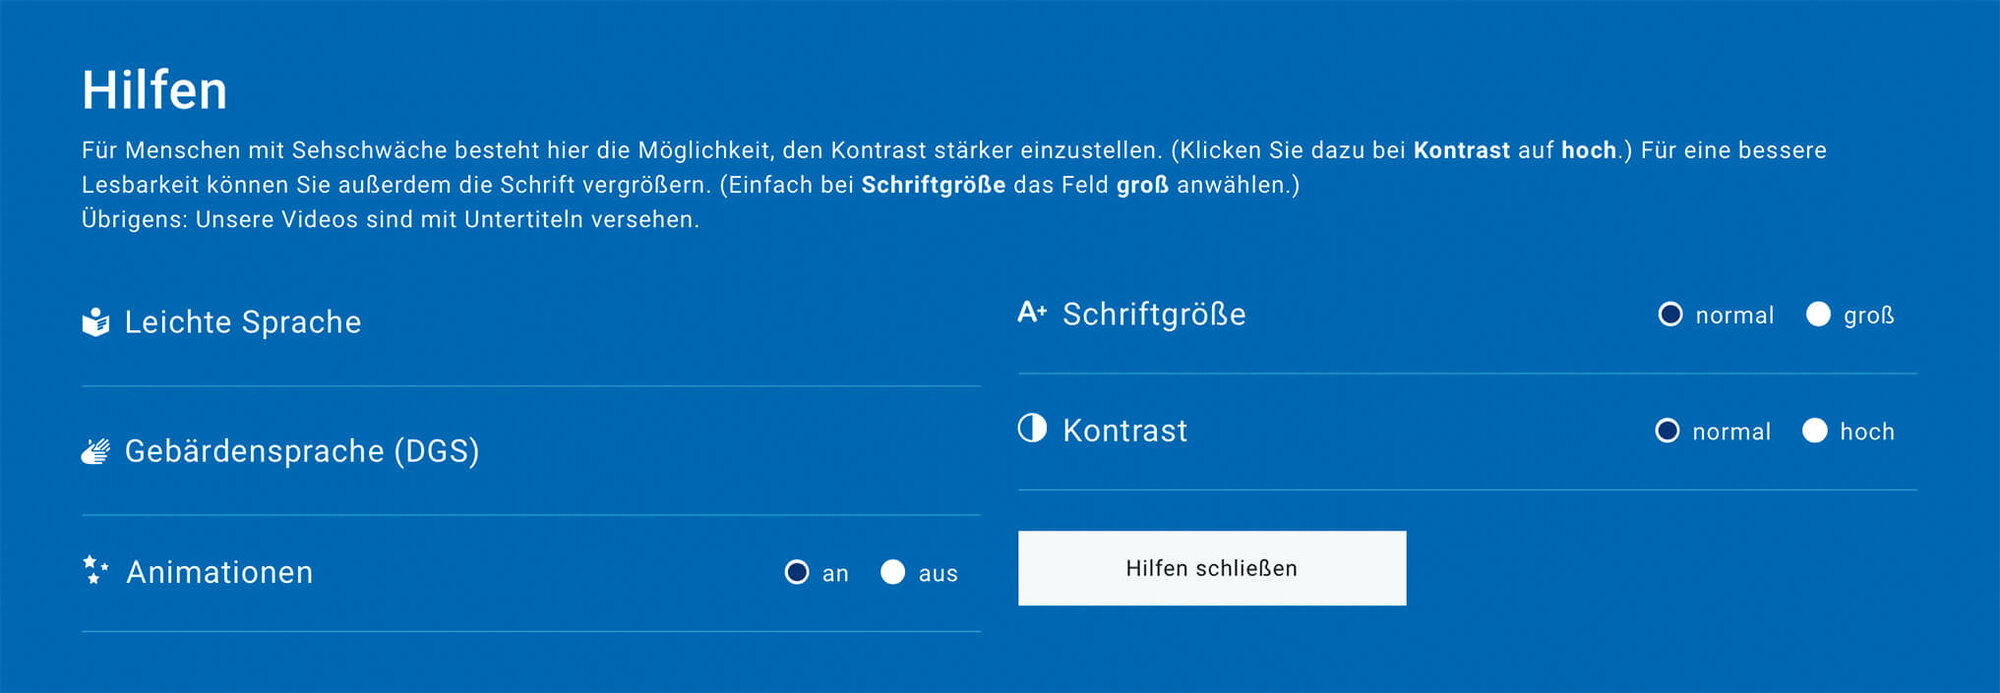 Screenshot der Hilfen für leichte Sprache auf bih.de